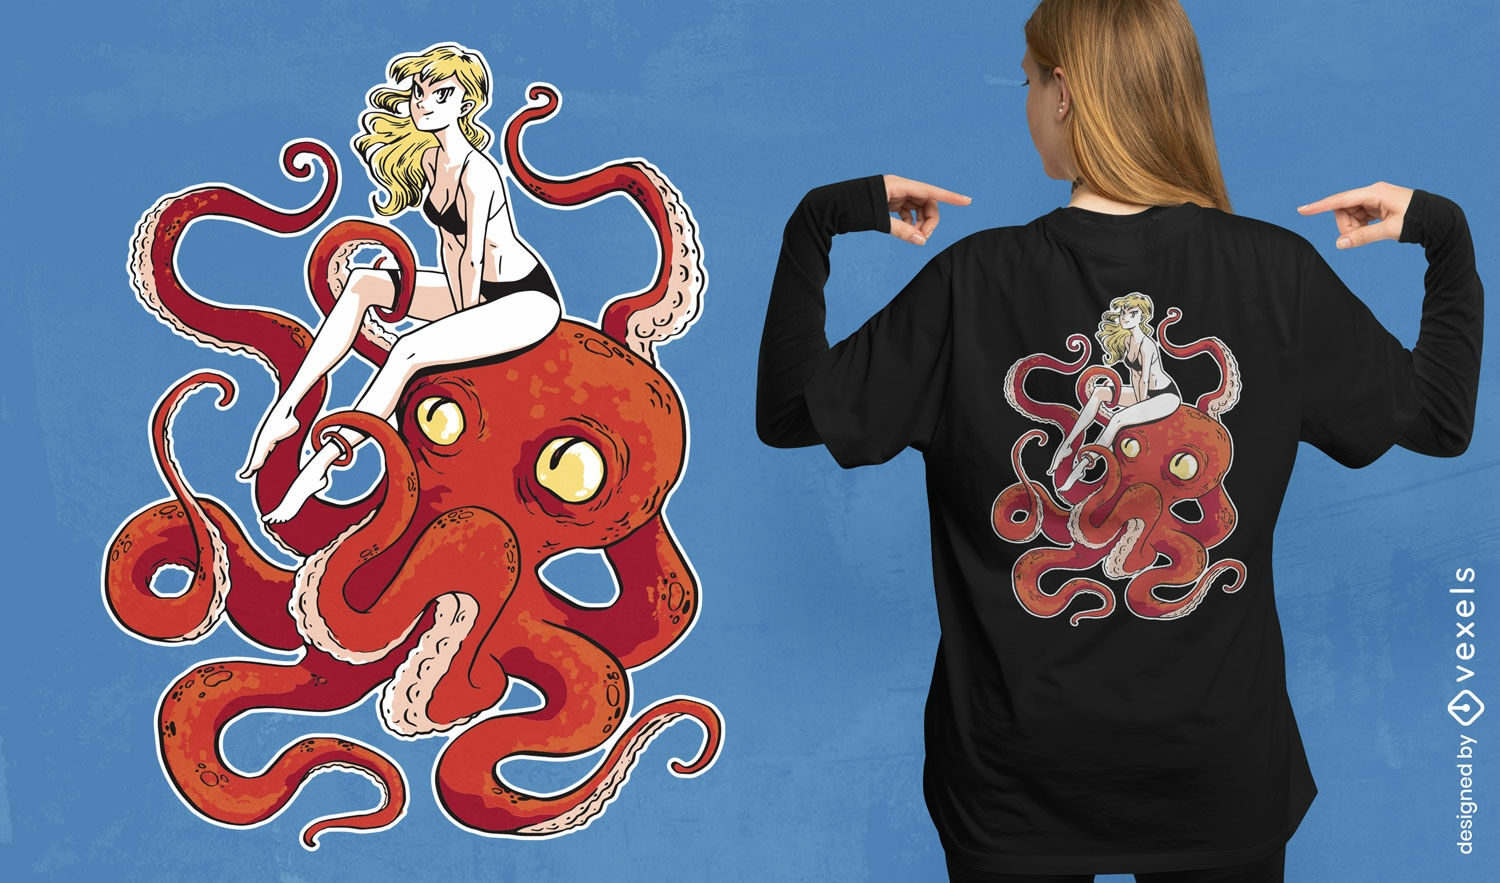 Girl on an octopus t-shirt design